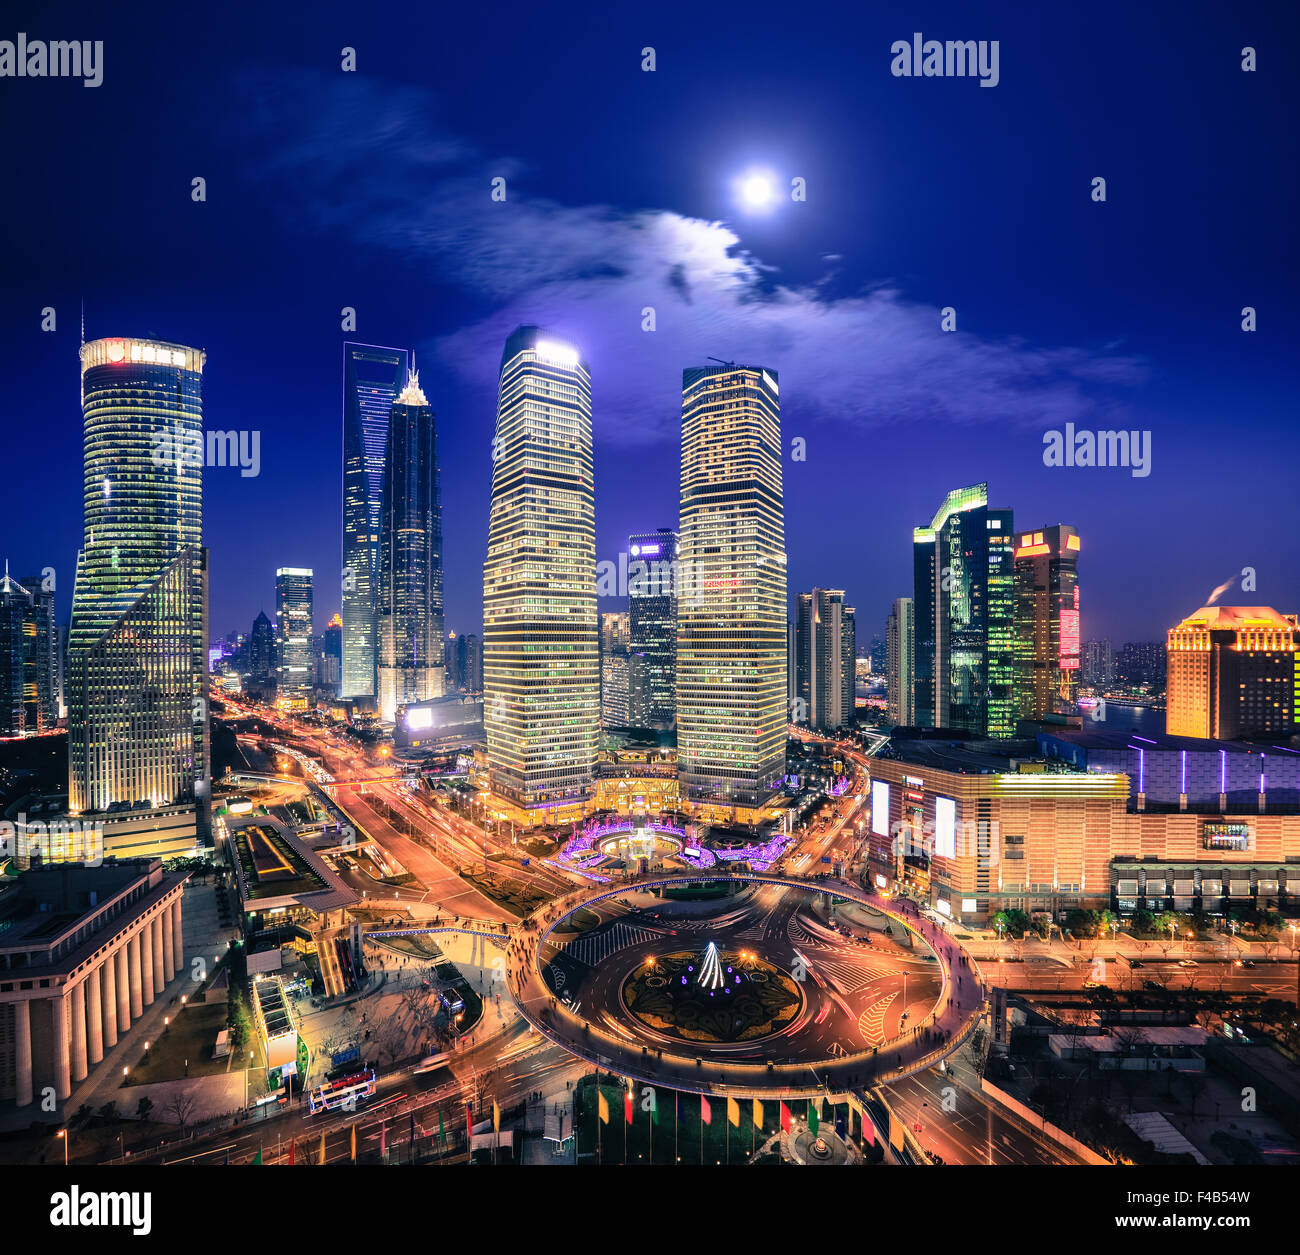 bird's eye view of shanghai skyline at night Stock Photo